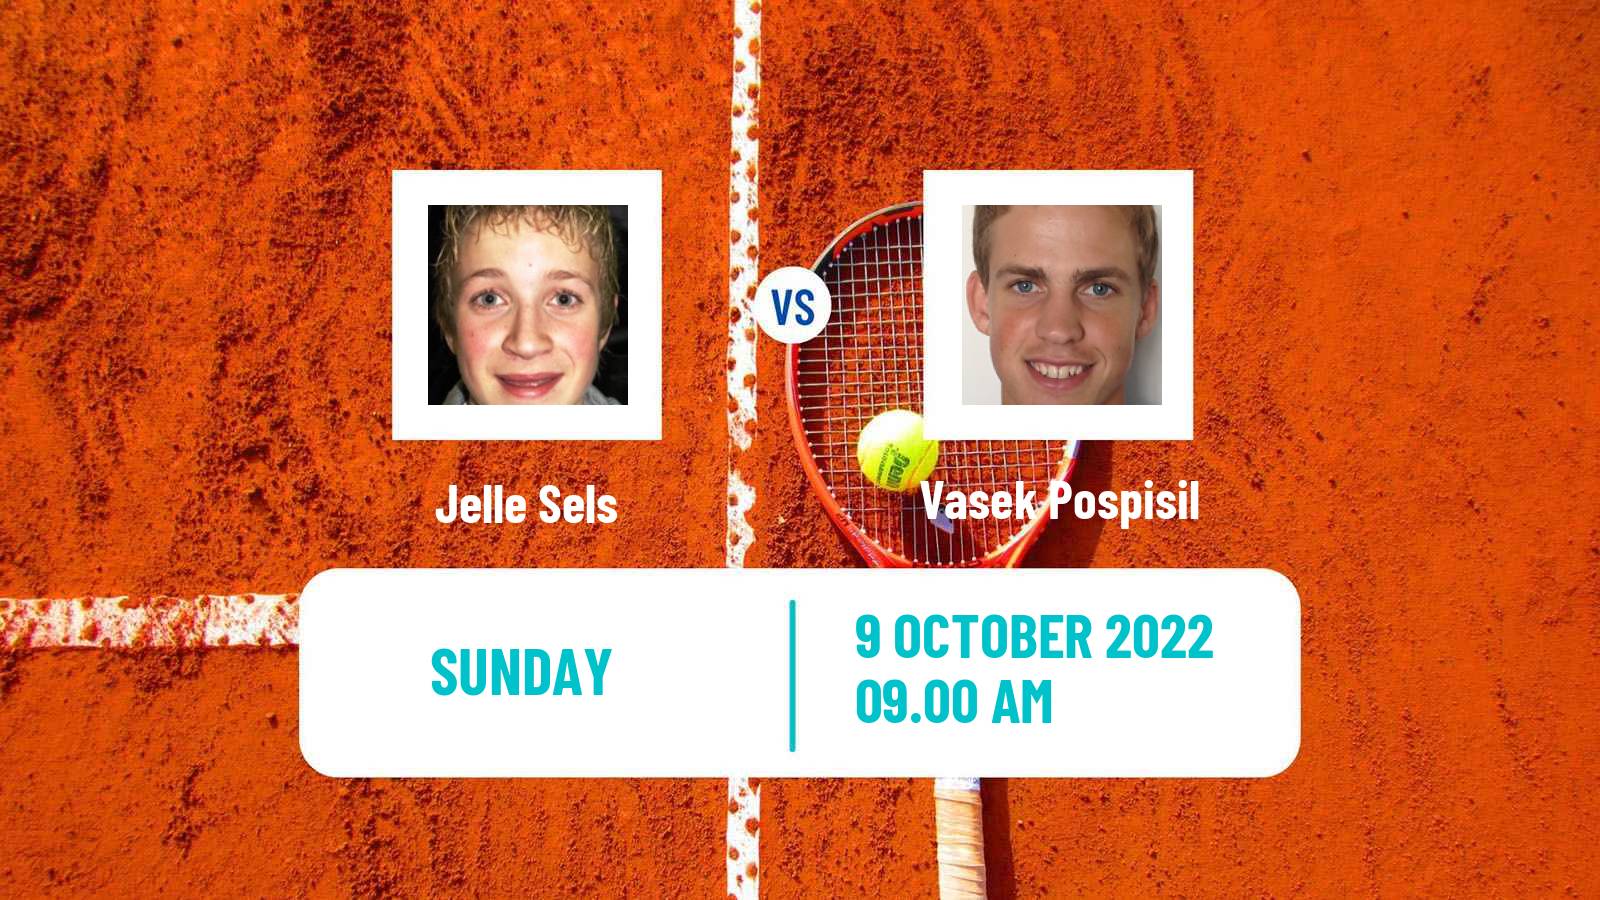 Tennis ATP Challenger Jelle Sels - Vasek Pospisil